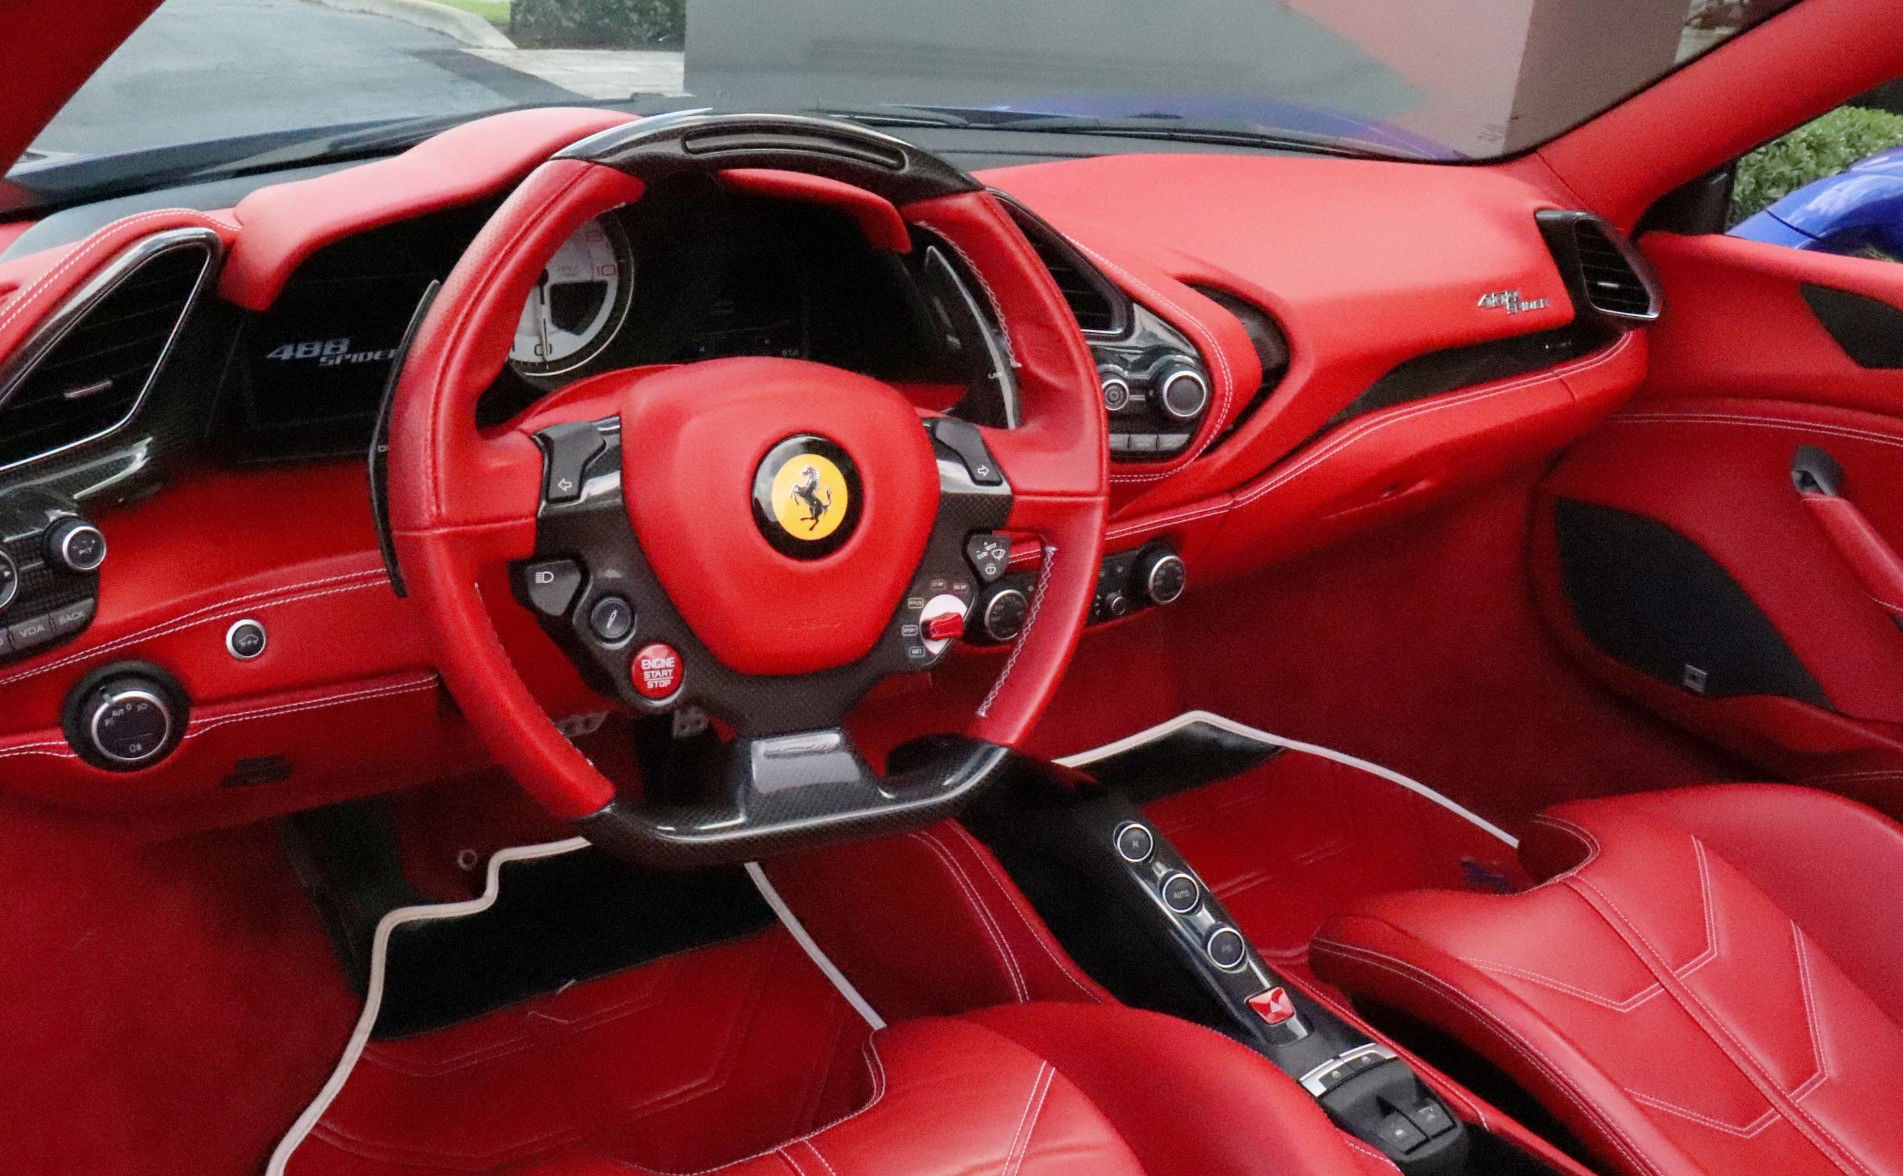 2018 Ferrari 488 interior.